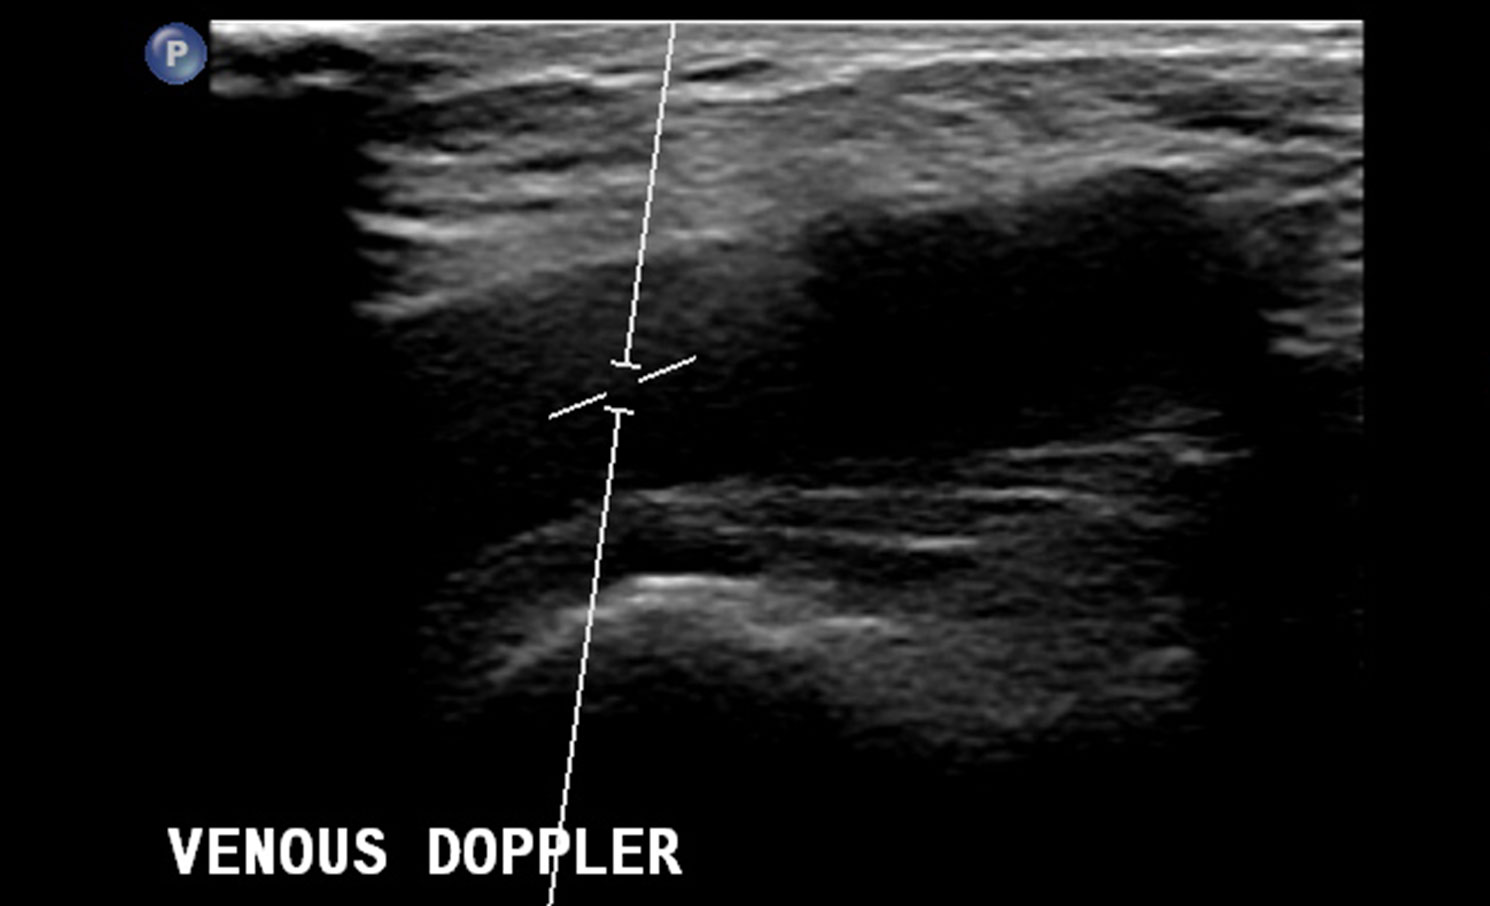 Vascular (Doppler) scan